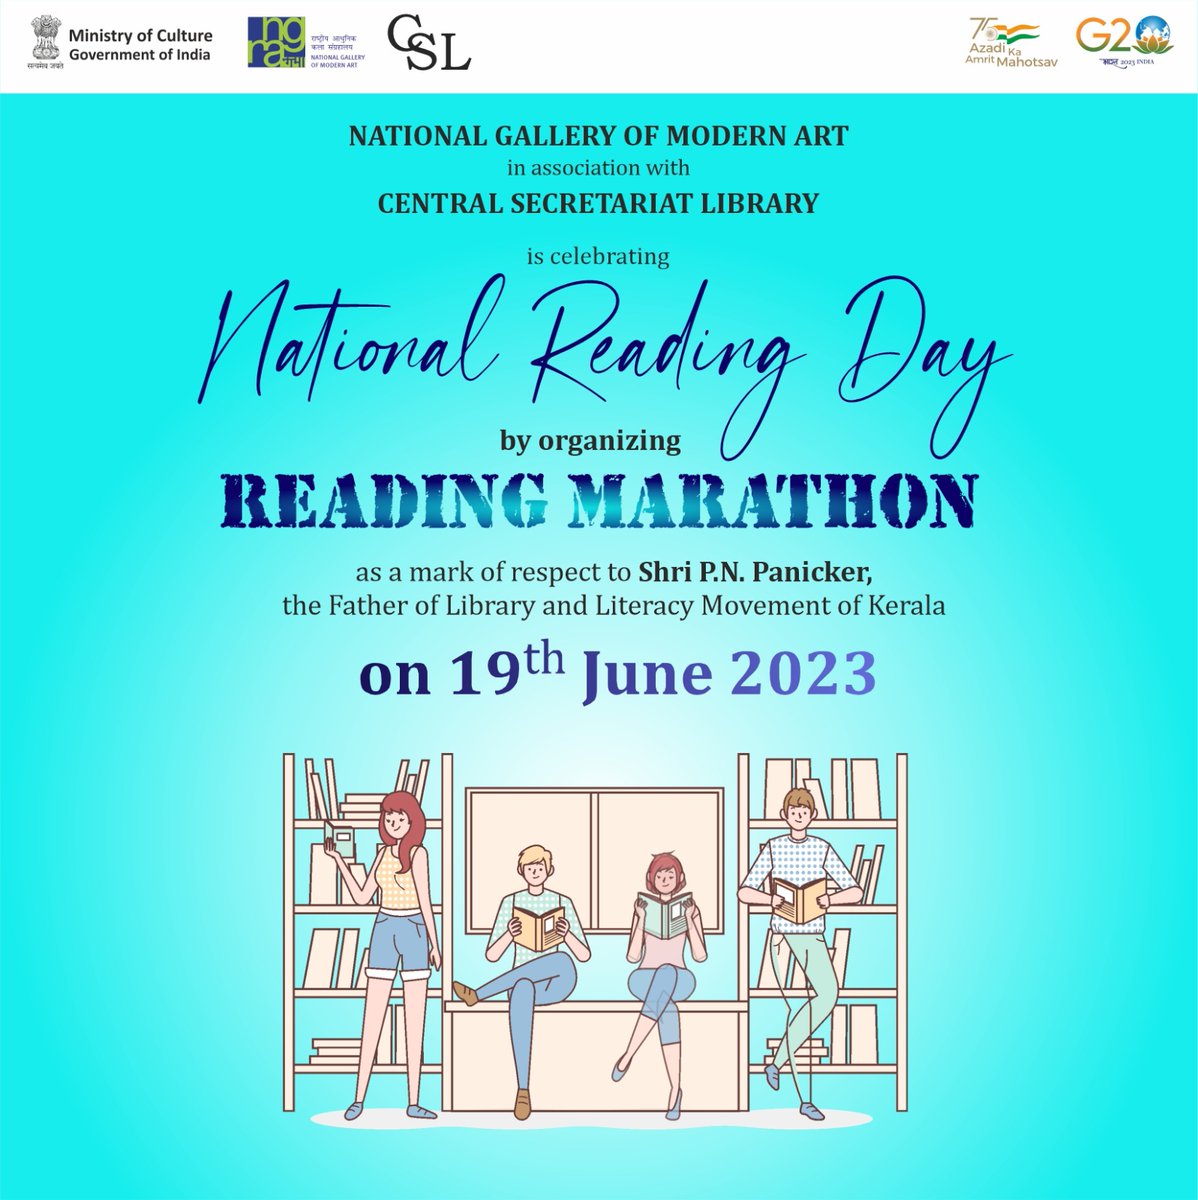 National Reading Day
#NGMA
#NationalReadingDay
#AmritMahotsav #MuseumsReimagined #ourcultureourpride